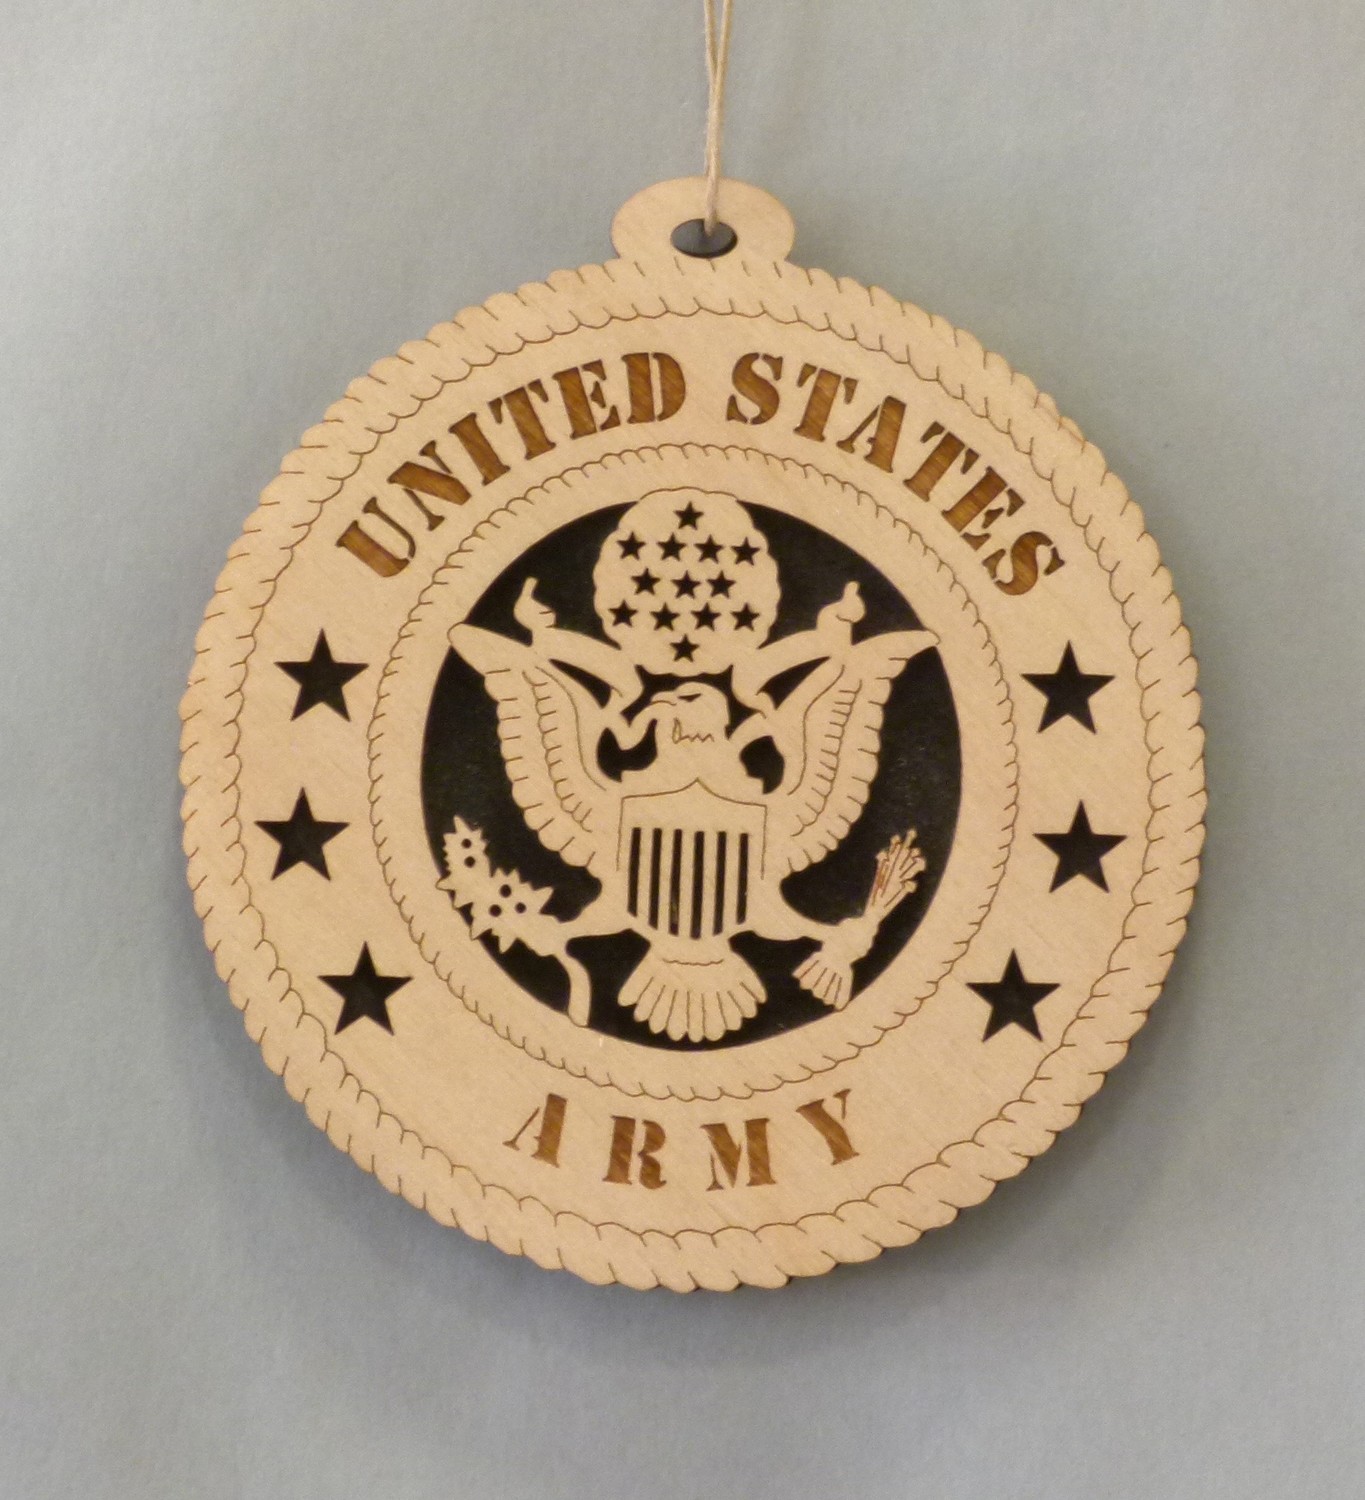 U.S. Army Insignia